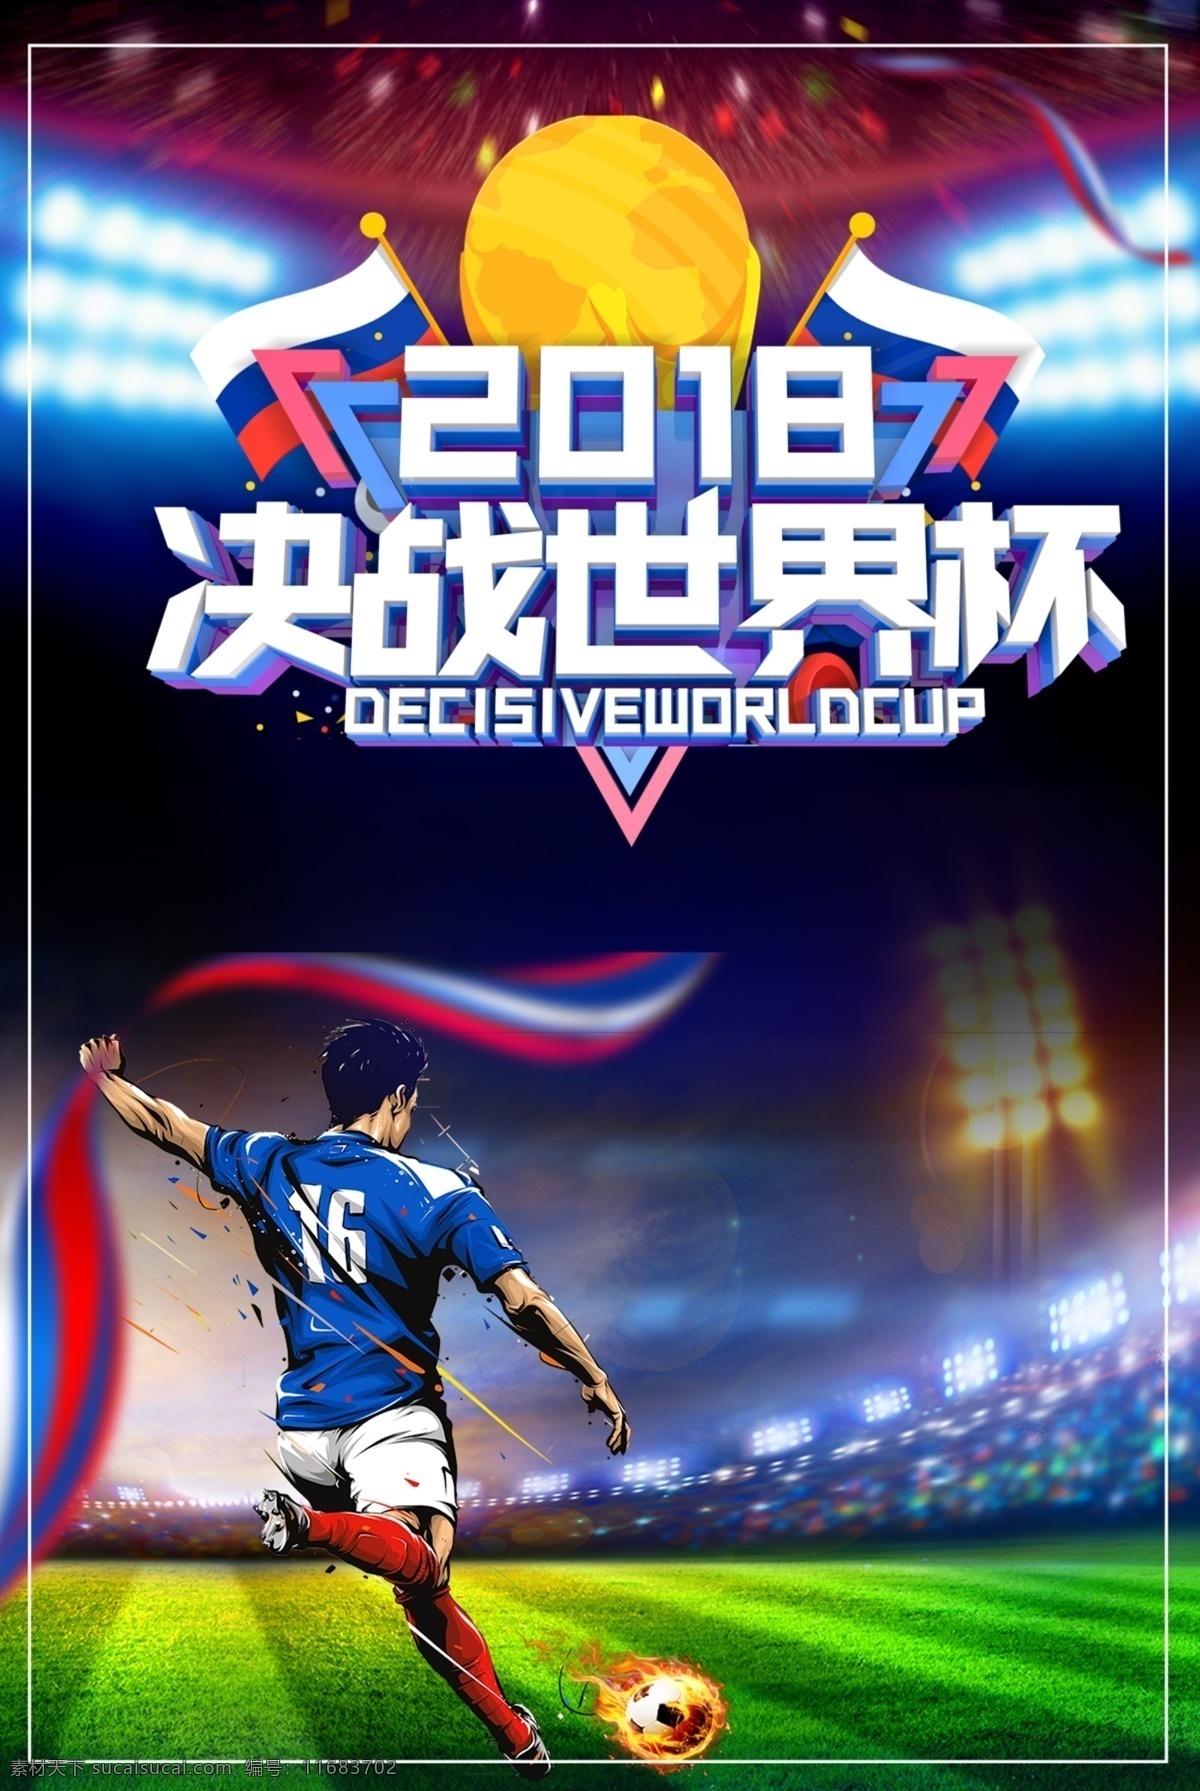 2018 决战 俄罗斯 世界杯 足球比赛 宣传海报 比赛 足球 比赛海报 体育运动 运动员 决战世界杯 俄罗斯世界杯 球场